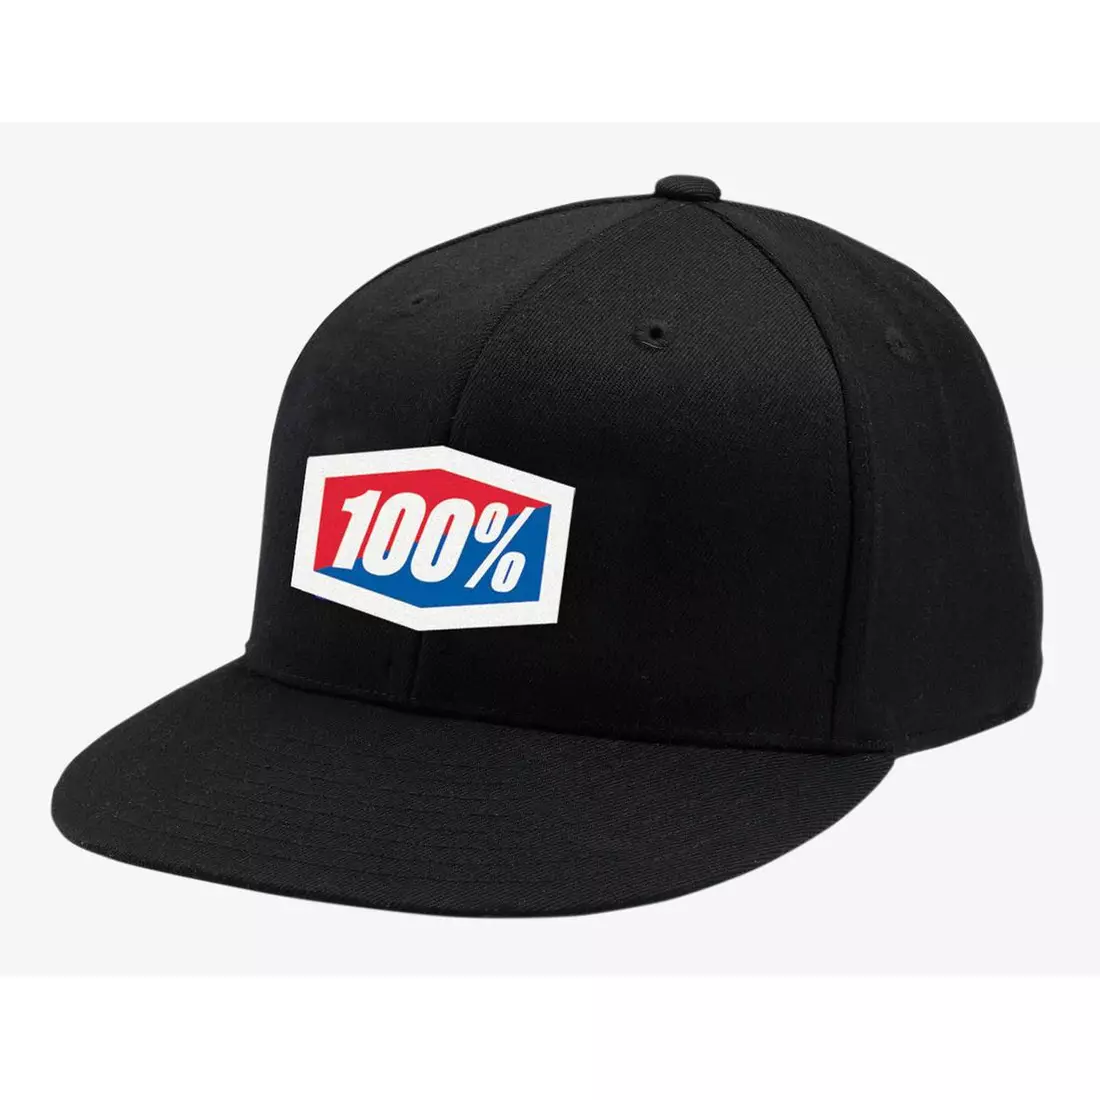 100% șapcă de baseball official J-Fit flexfit hat black STO-20040-001-17